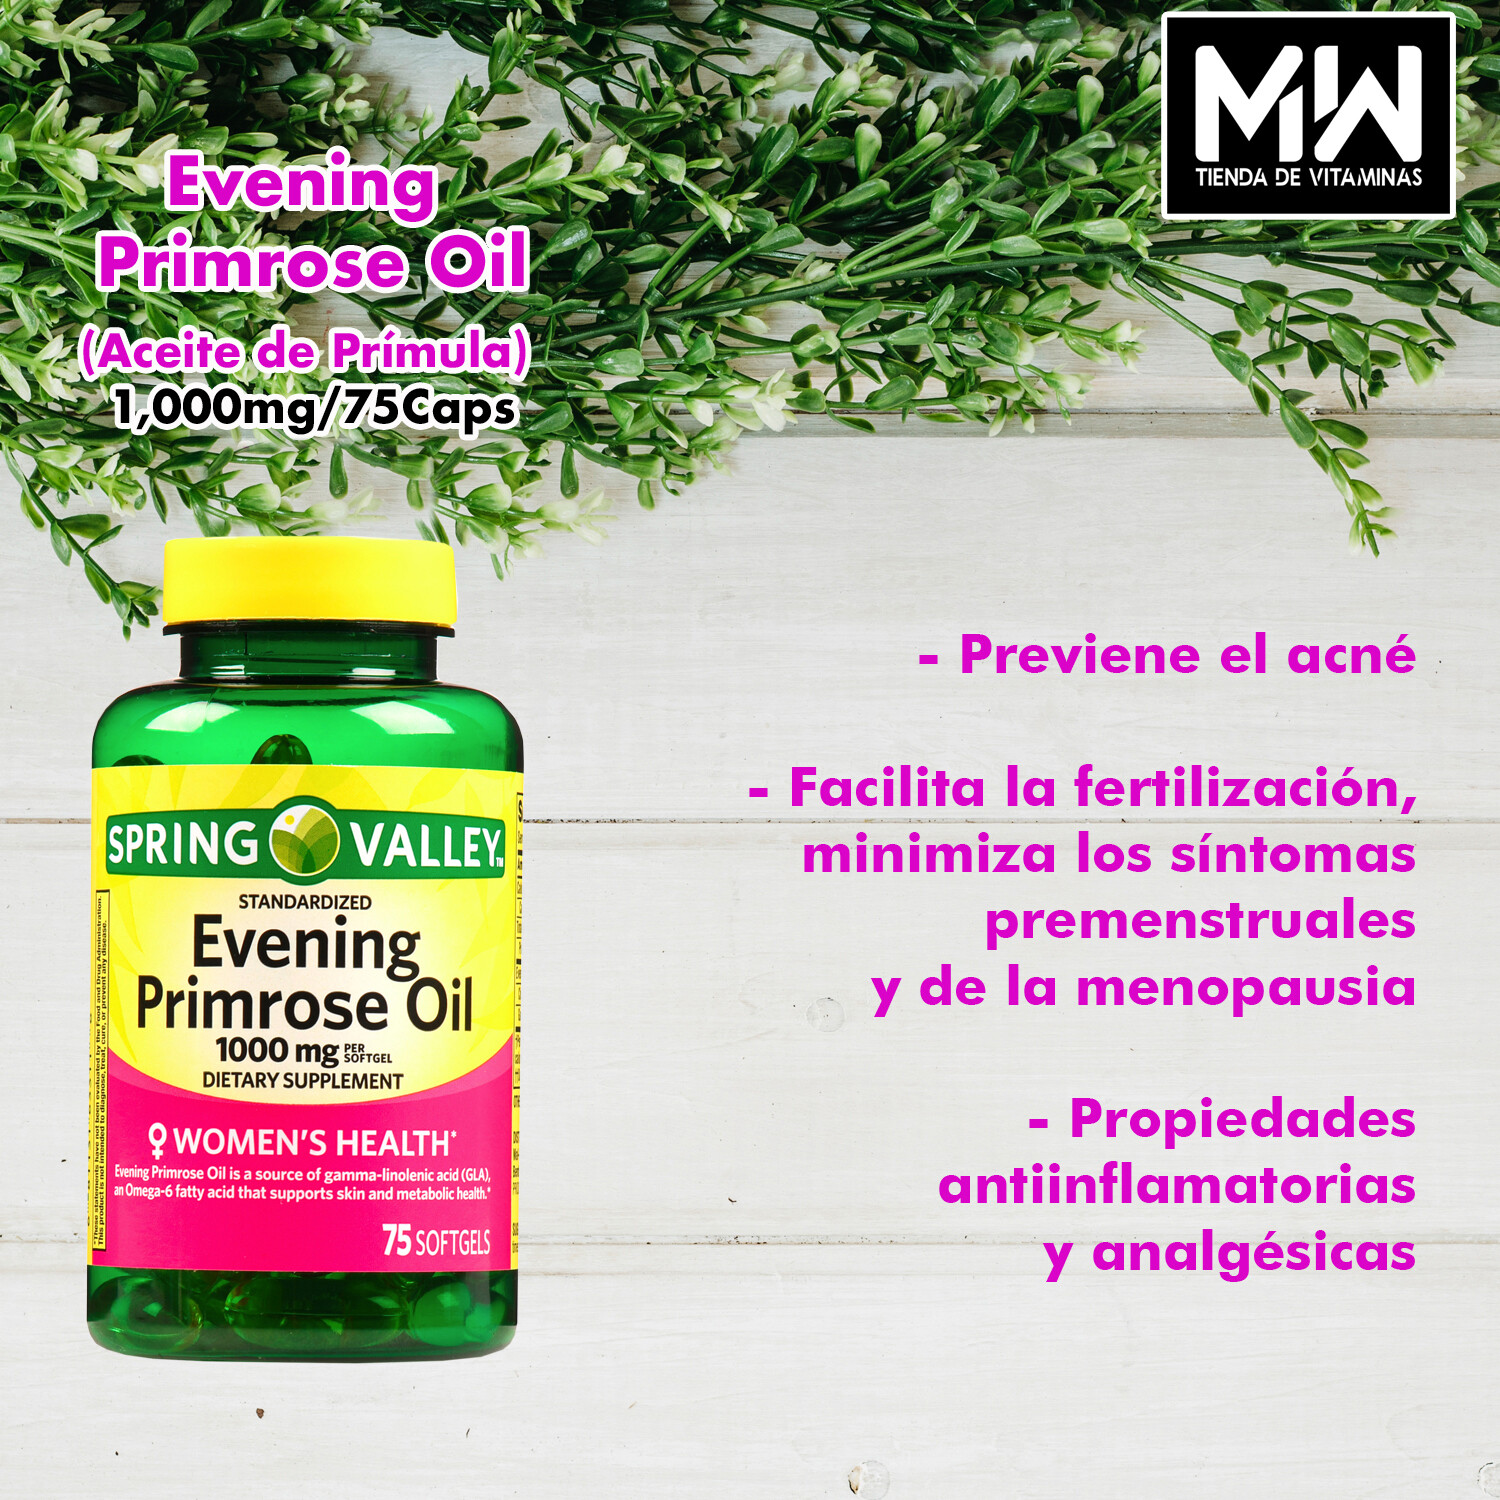 Aceite De Prímula (Onagra) / Evening Primrose Oil 1,000 mg 75 Caps.